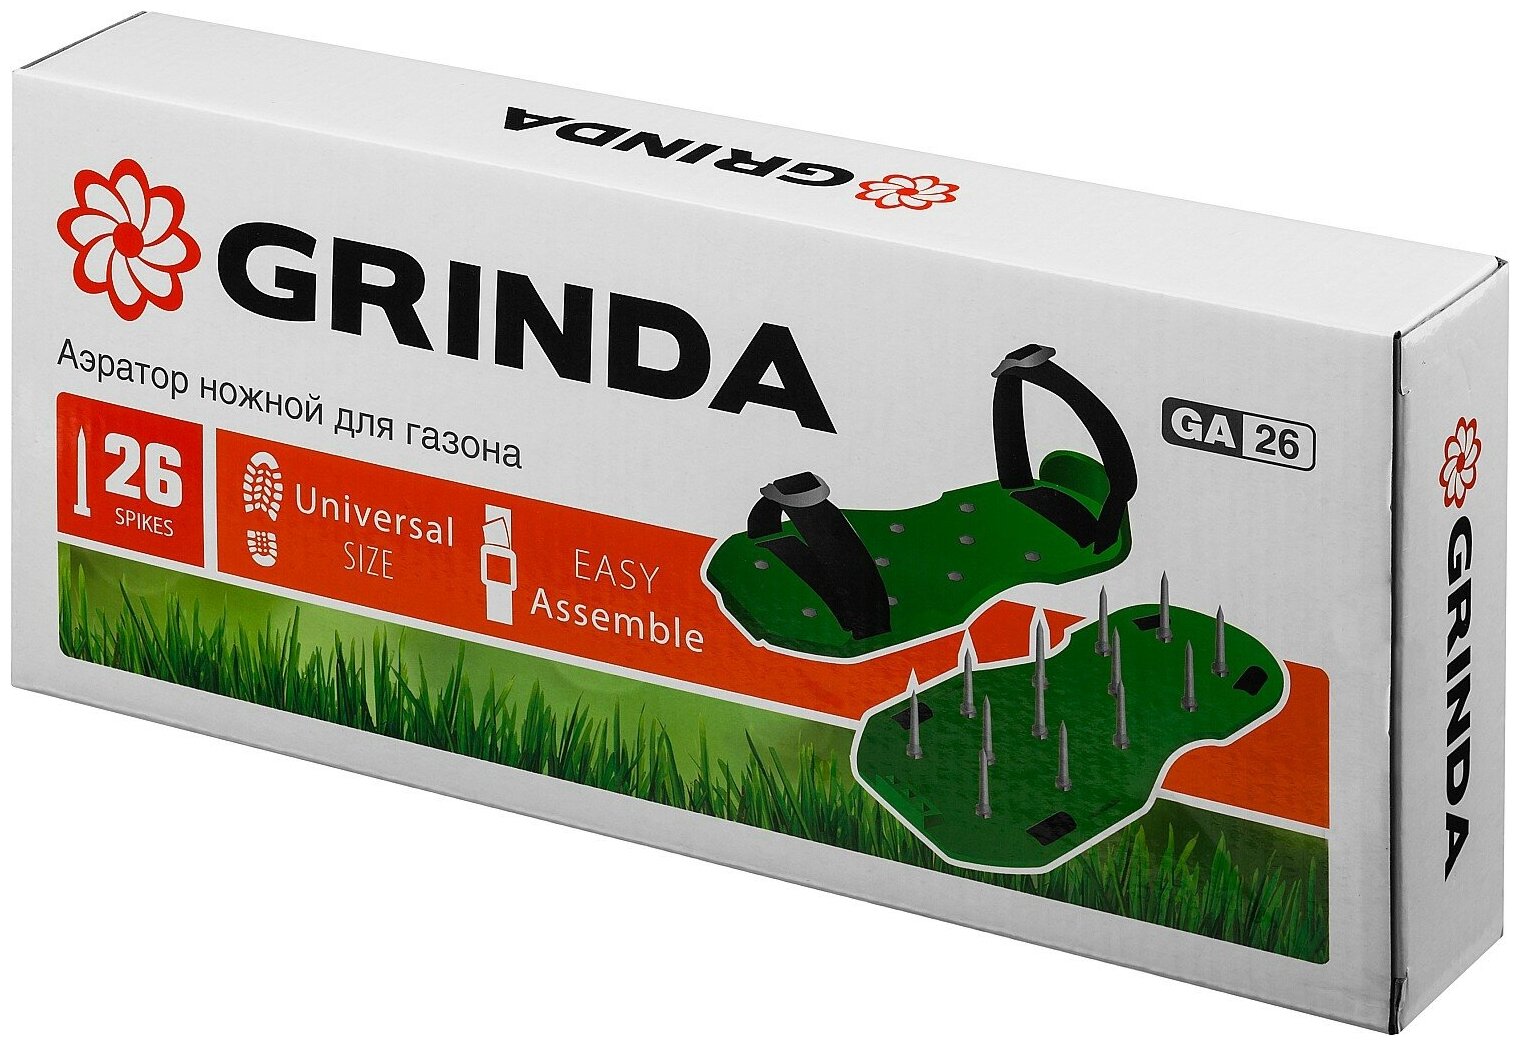 GRINDA GA-26 аэратор ножной для газона со стальными шипами, 26 шипов длиной 50мм - фотография № 4